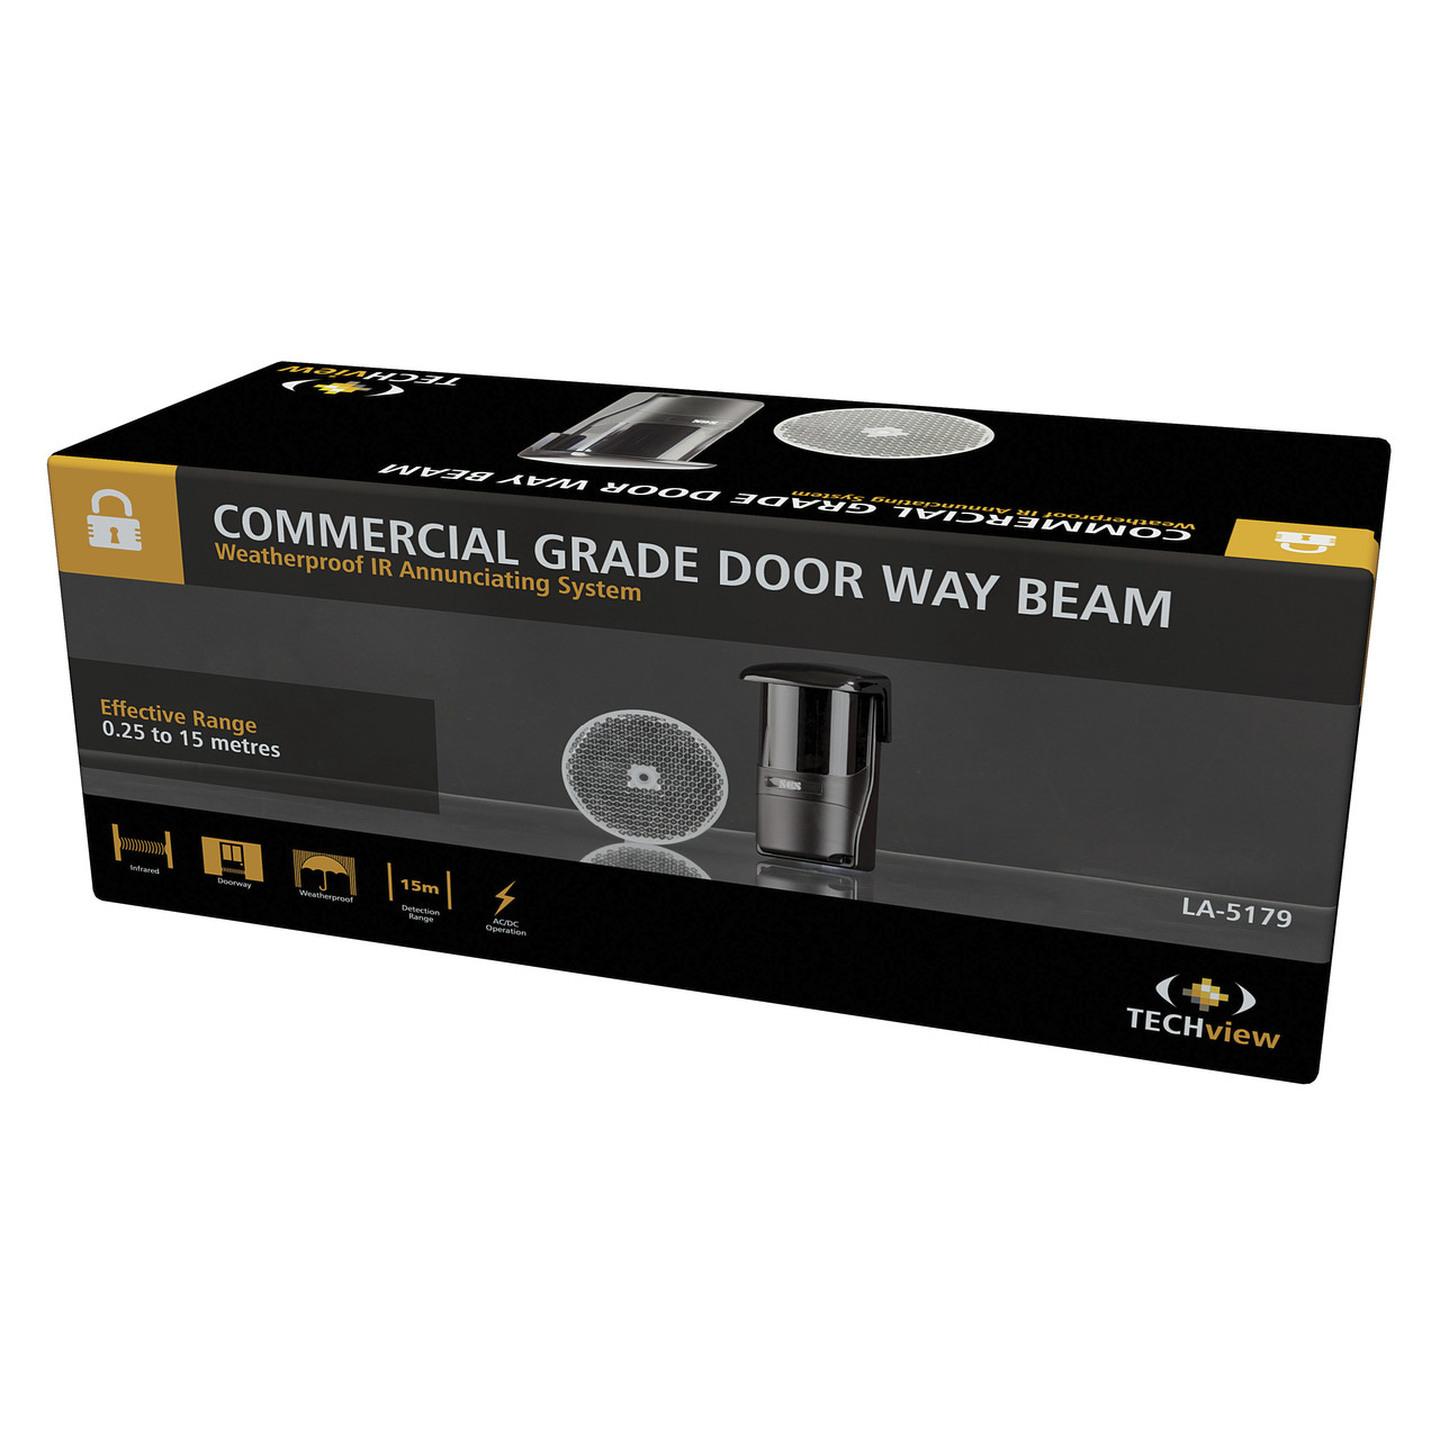 Weatherproof Commercial Grade Door Way Beam